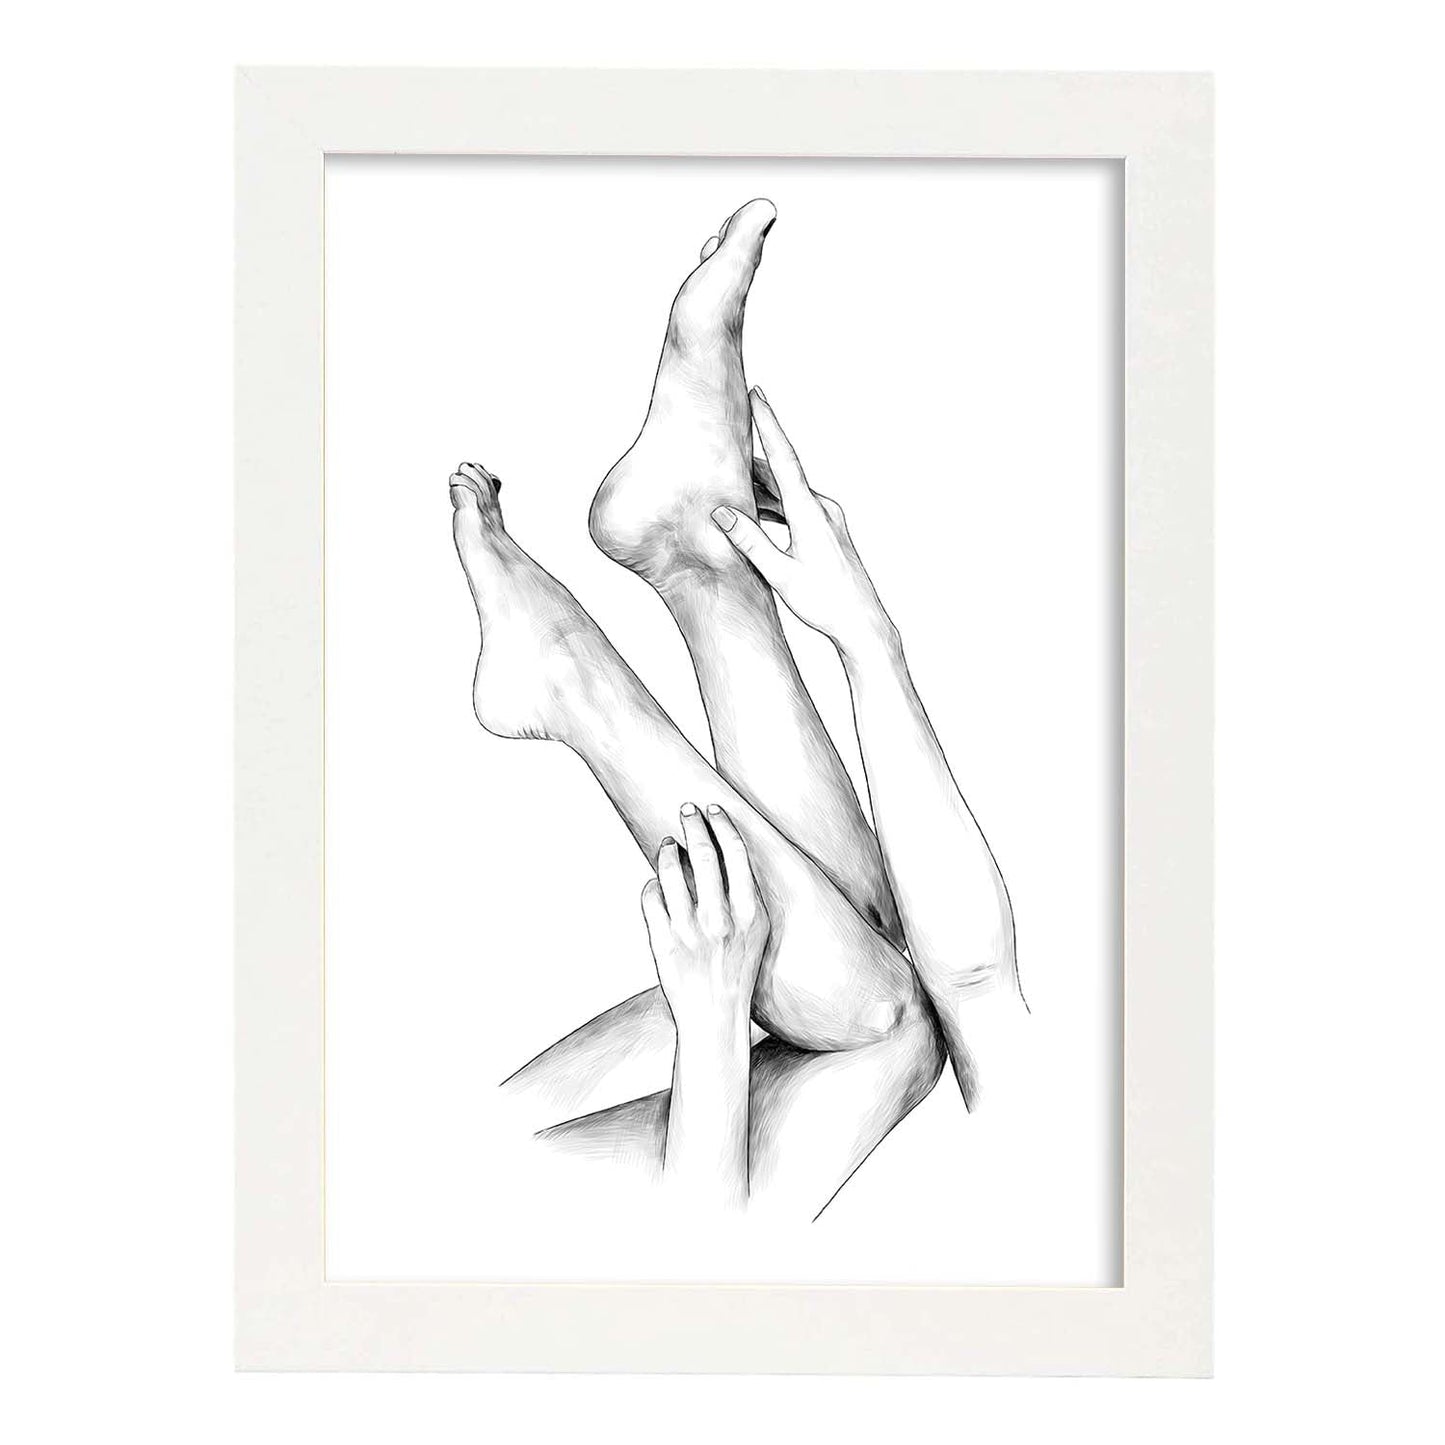 Posters eróticos. Lámina Piernas 2 dibujada con imágenes sensuales del cuerpo femenino.-Artwork-Nacnic-A3-Marco Blanco-Nacnic Estudio SL